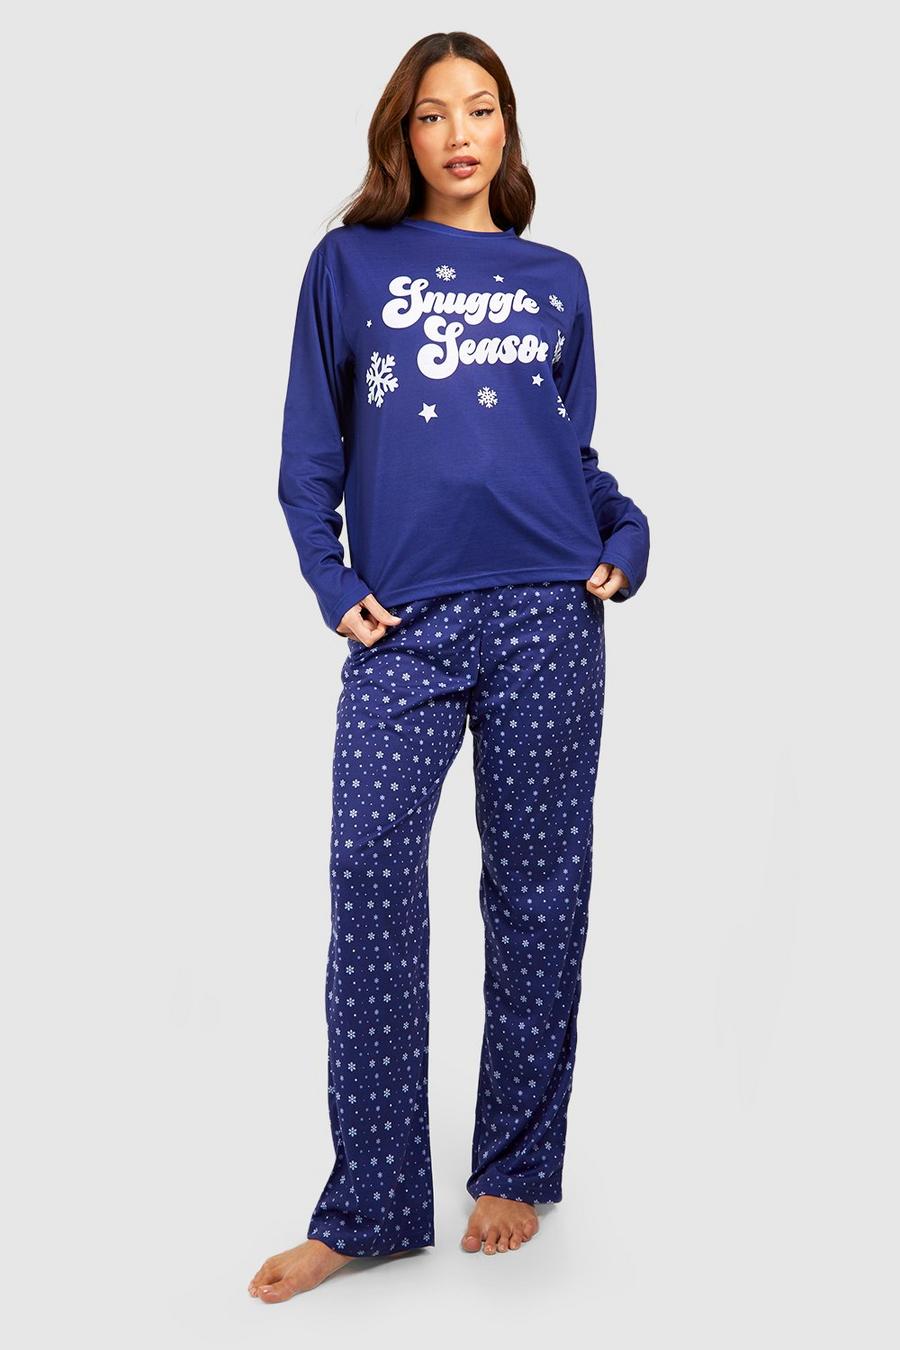 Pijama Tall Snuggle Season, Blue image number 1